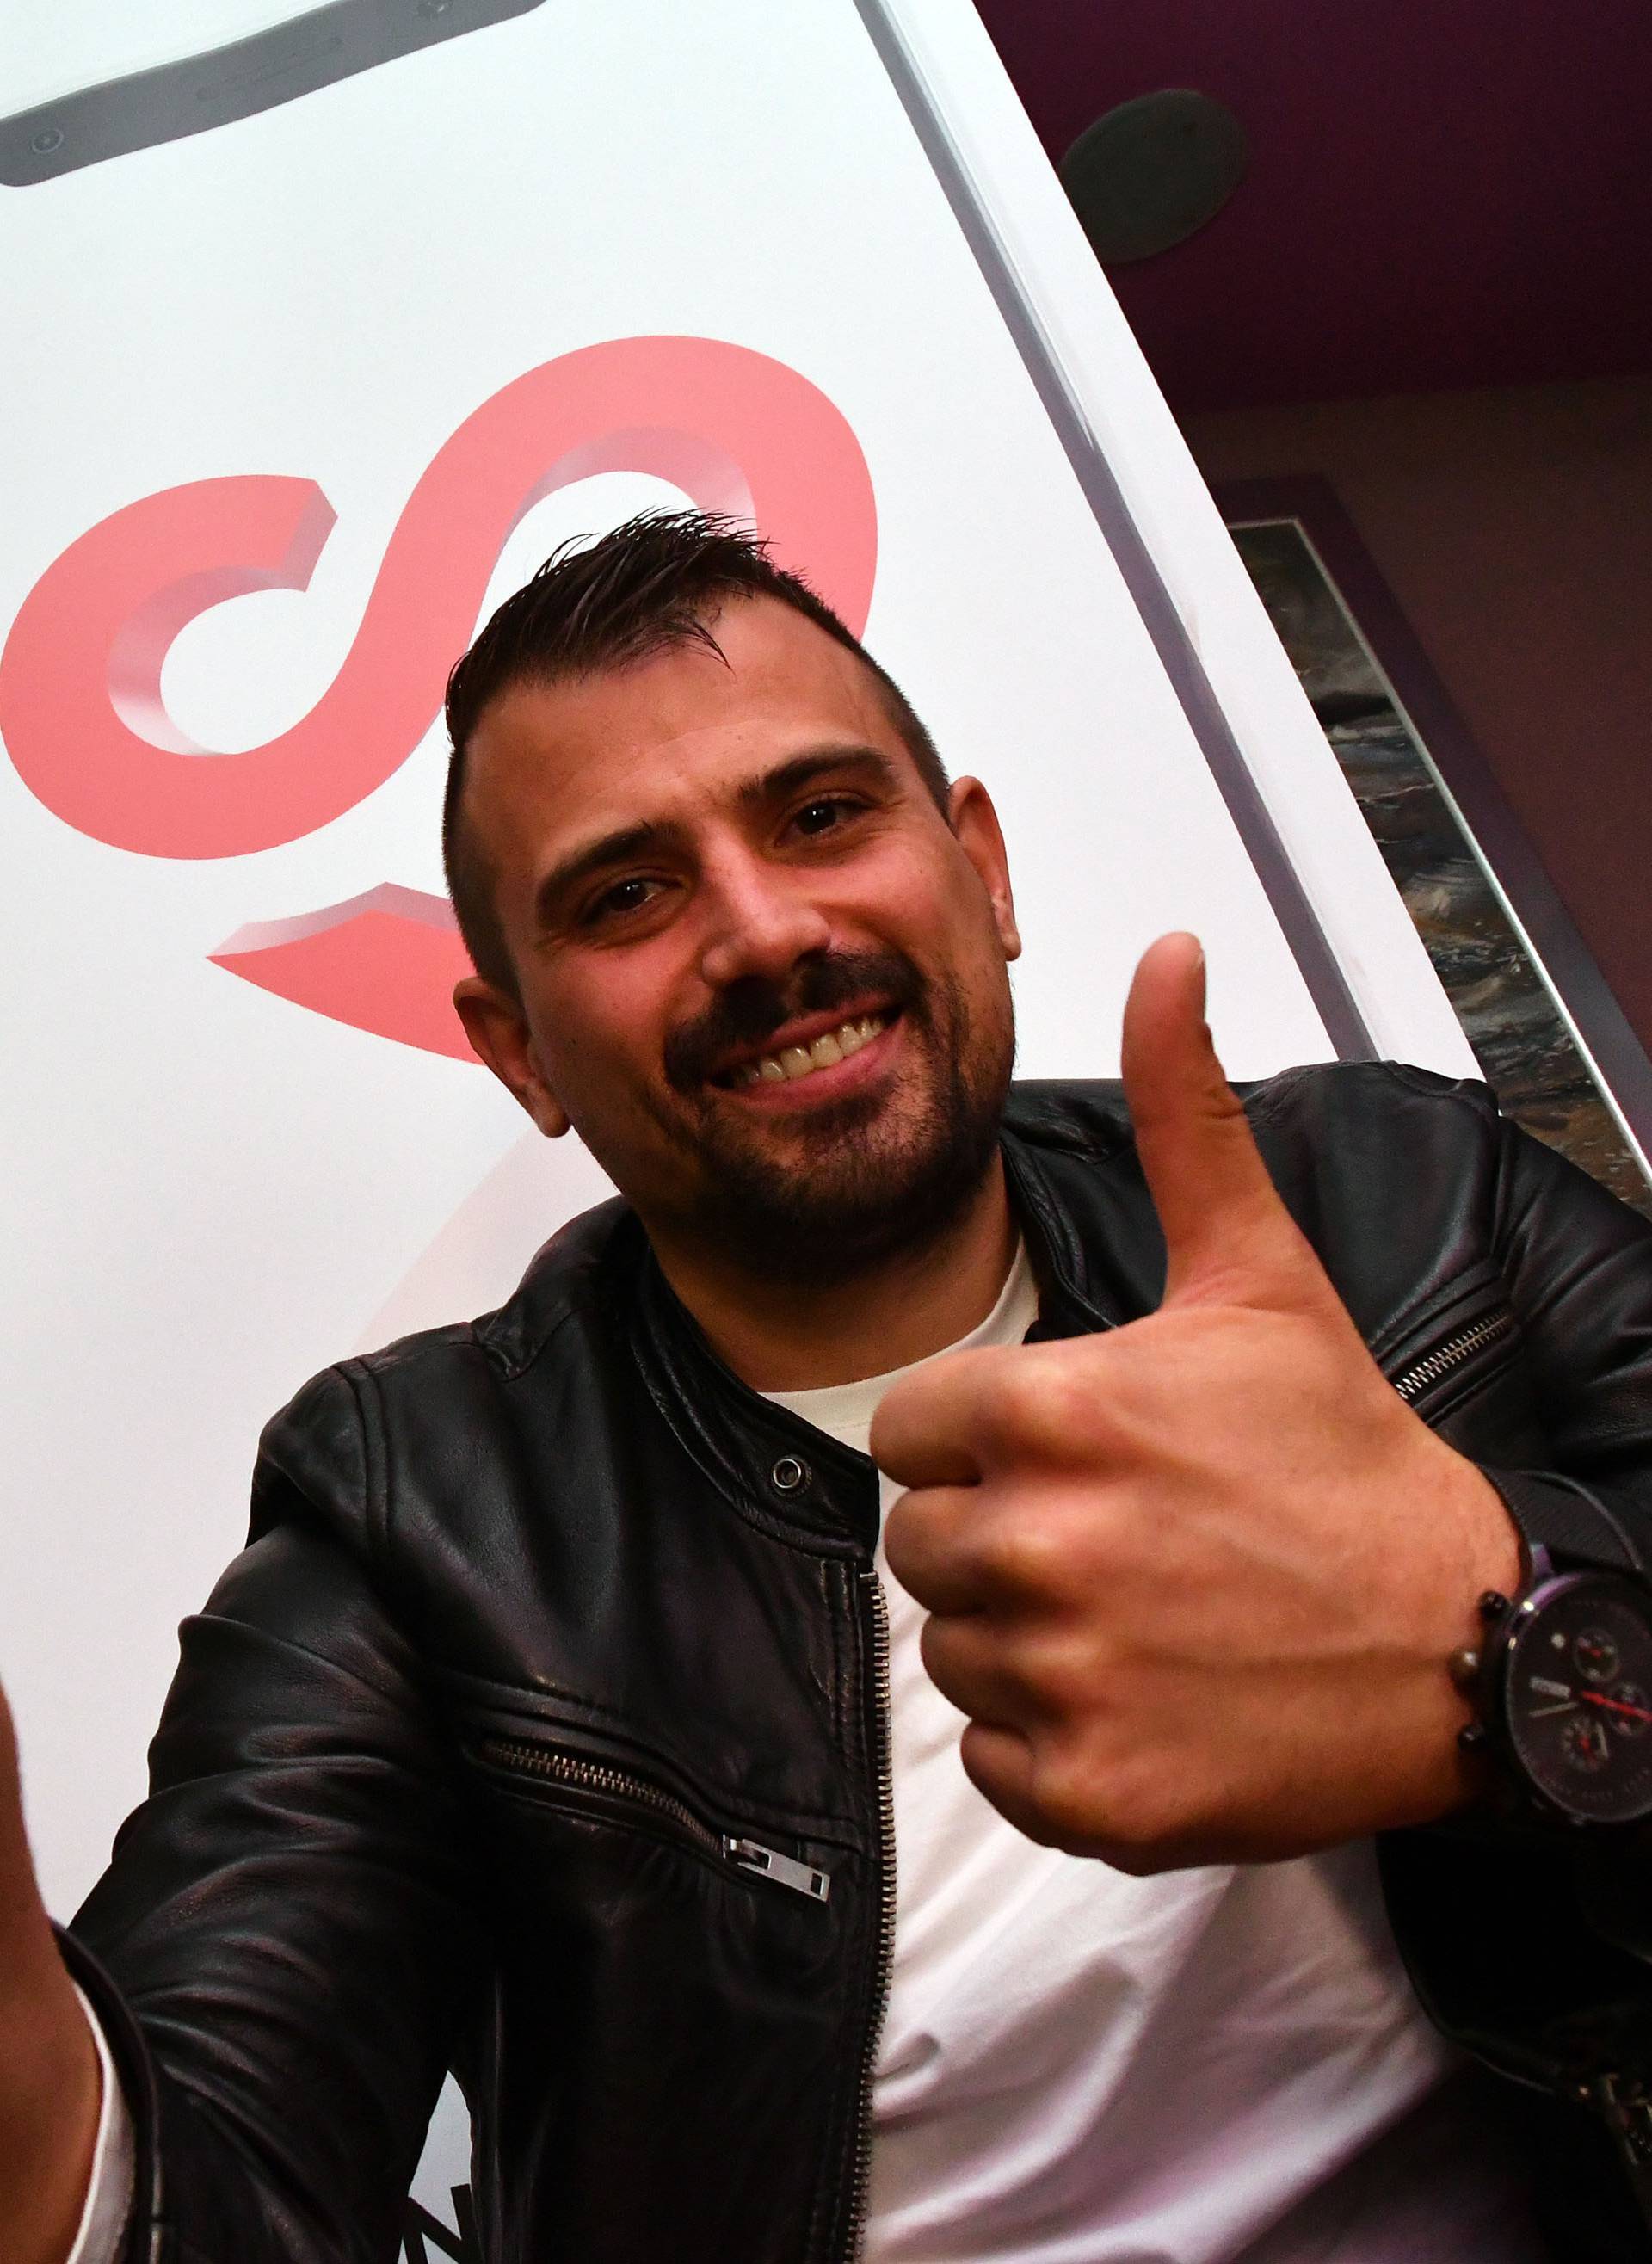 Slavonski Brod - Bivši pobjednik Big Brothera Vedran Lorenčić osmislilio je mobilnu aplikaciju "Vjenčanje Hrvatska".